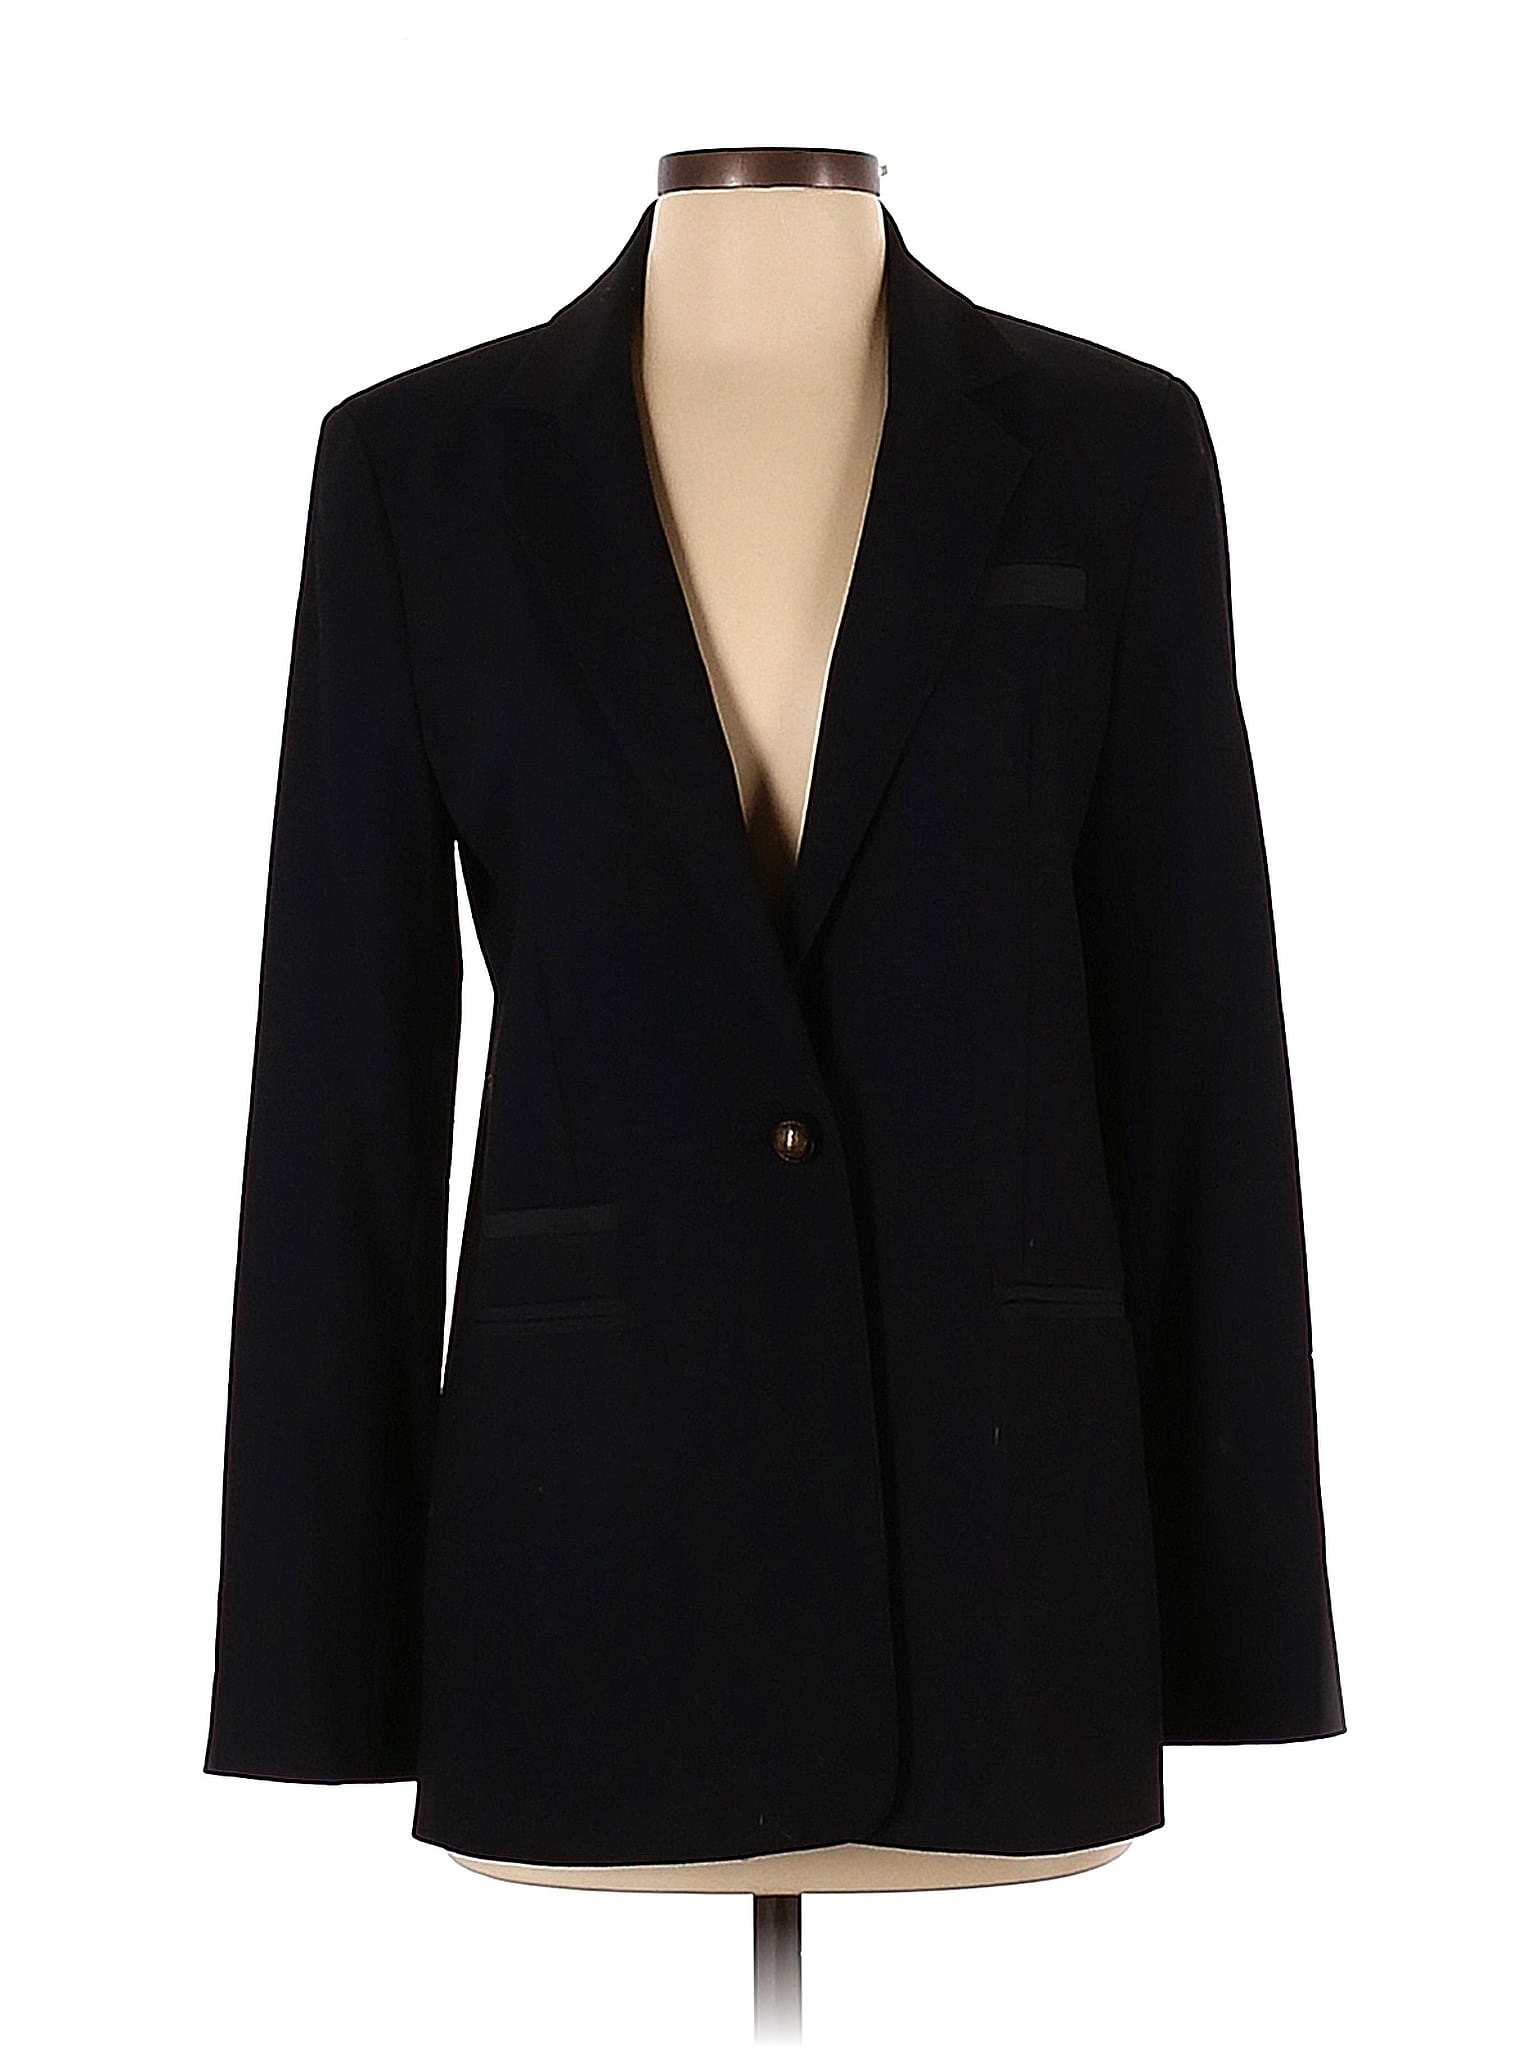 RACHEL Rachel Roy Solid Black Blazer Size 6 - 69% off | thredUP